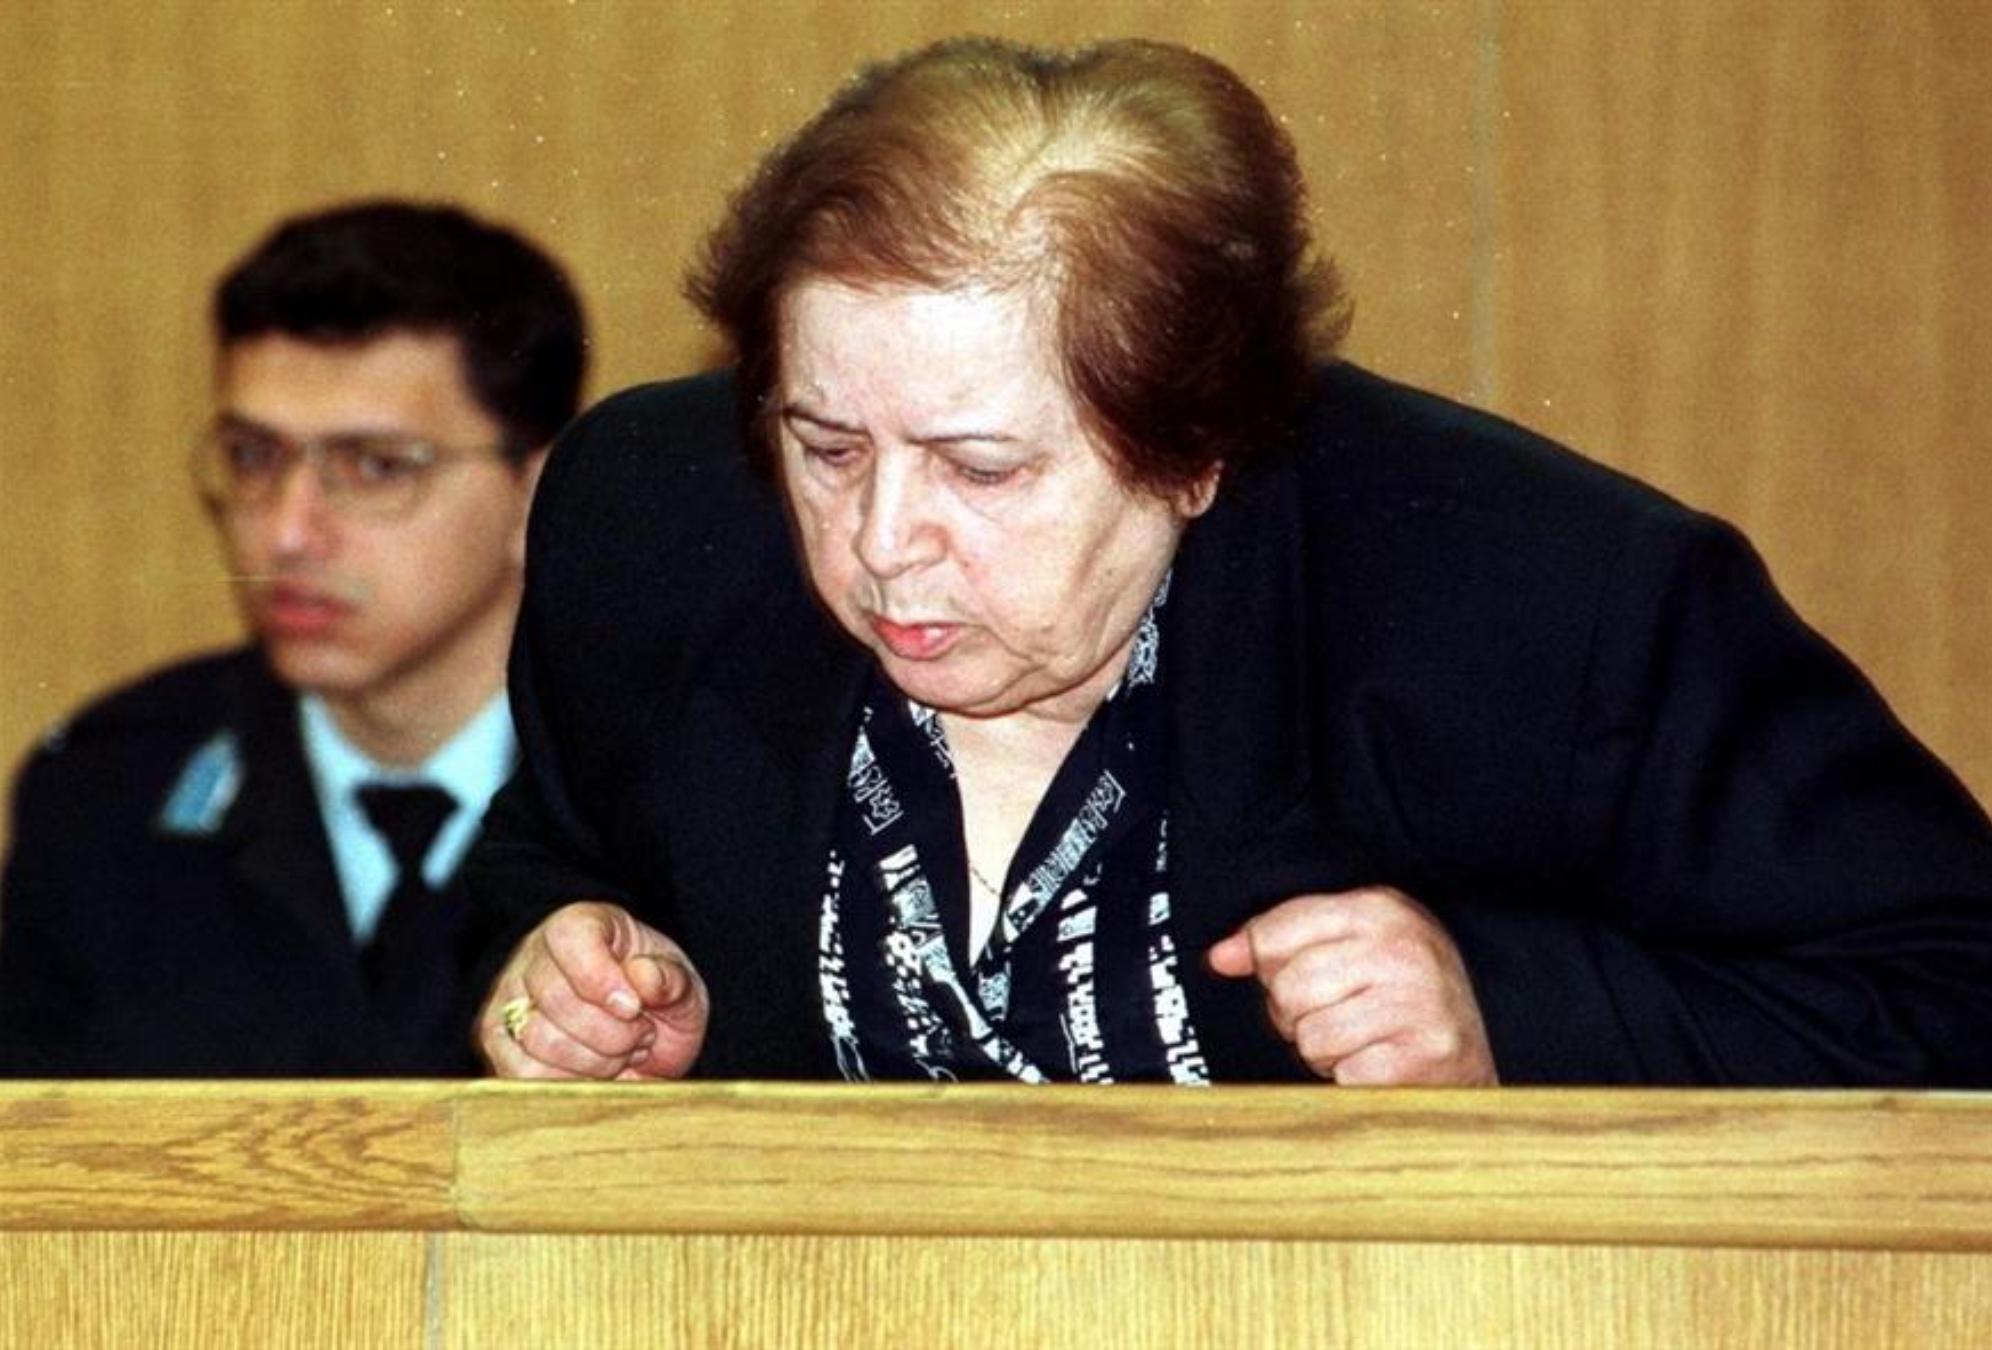 Μαρία Σαμπανιώτη: Η φόνισσα που ξεκλήρισε 2 οικογένειες επειδή αρνήθηκαν το προξενιό με τις κόρες της